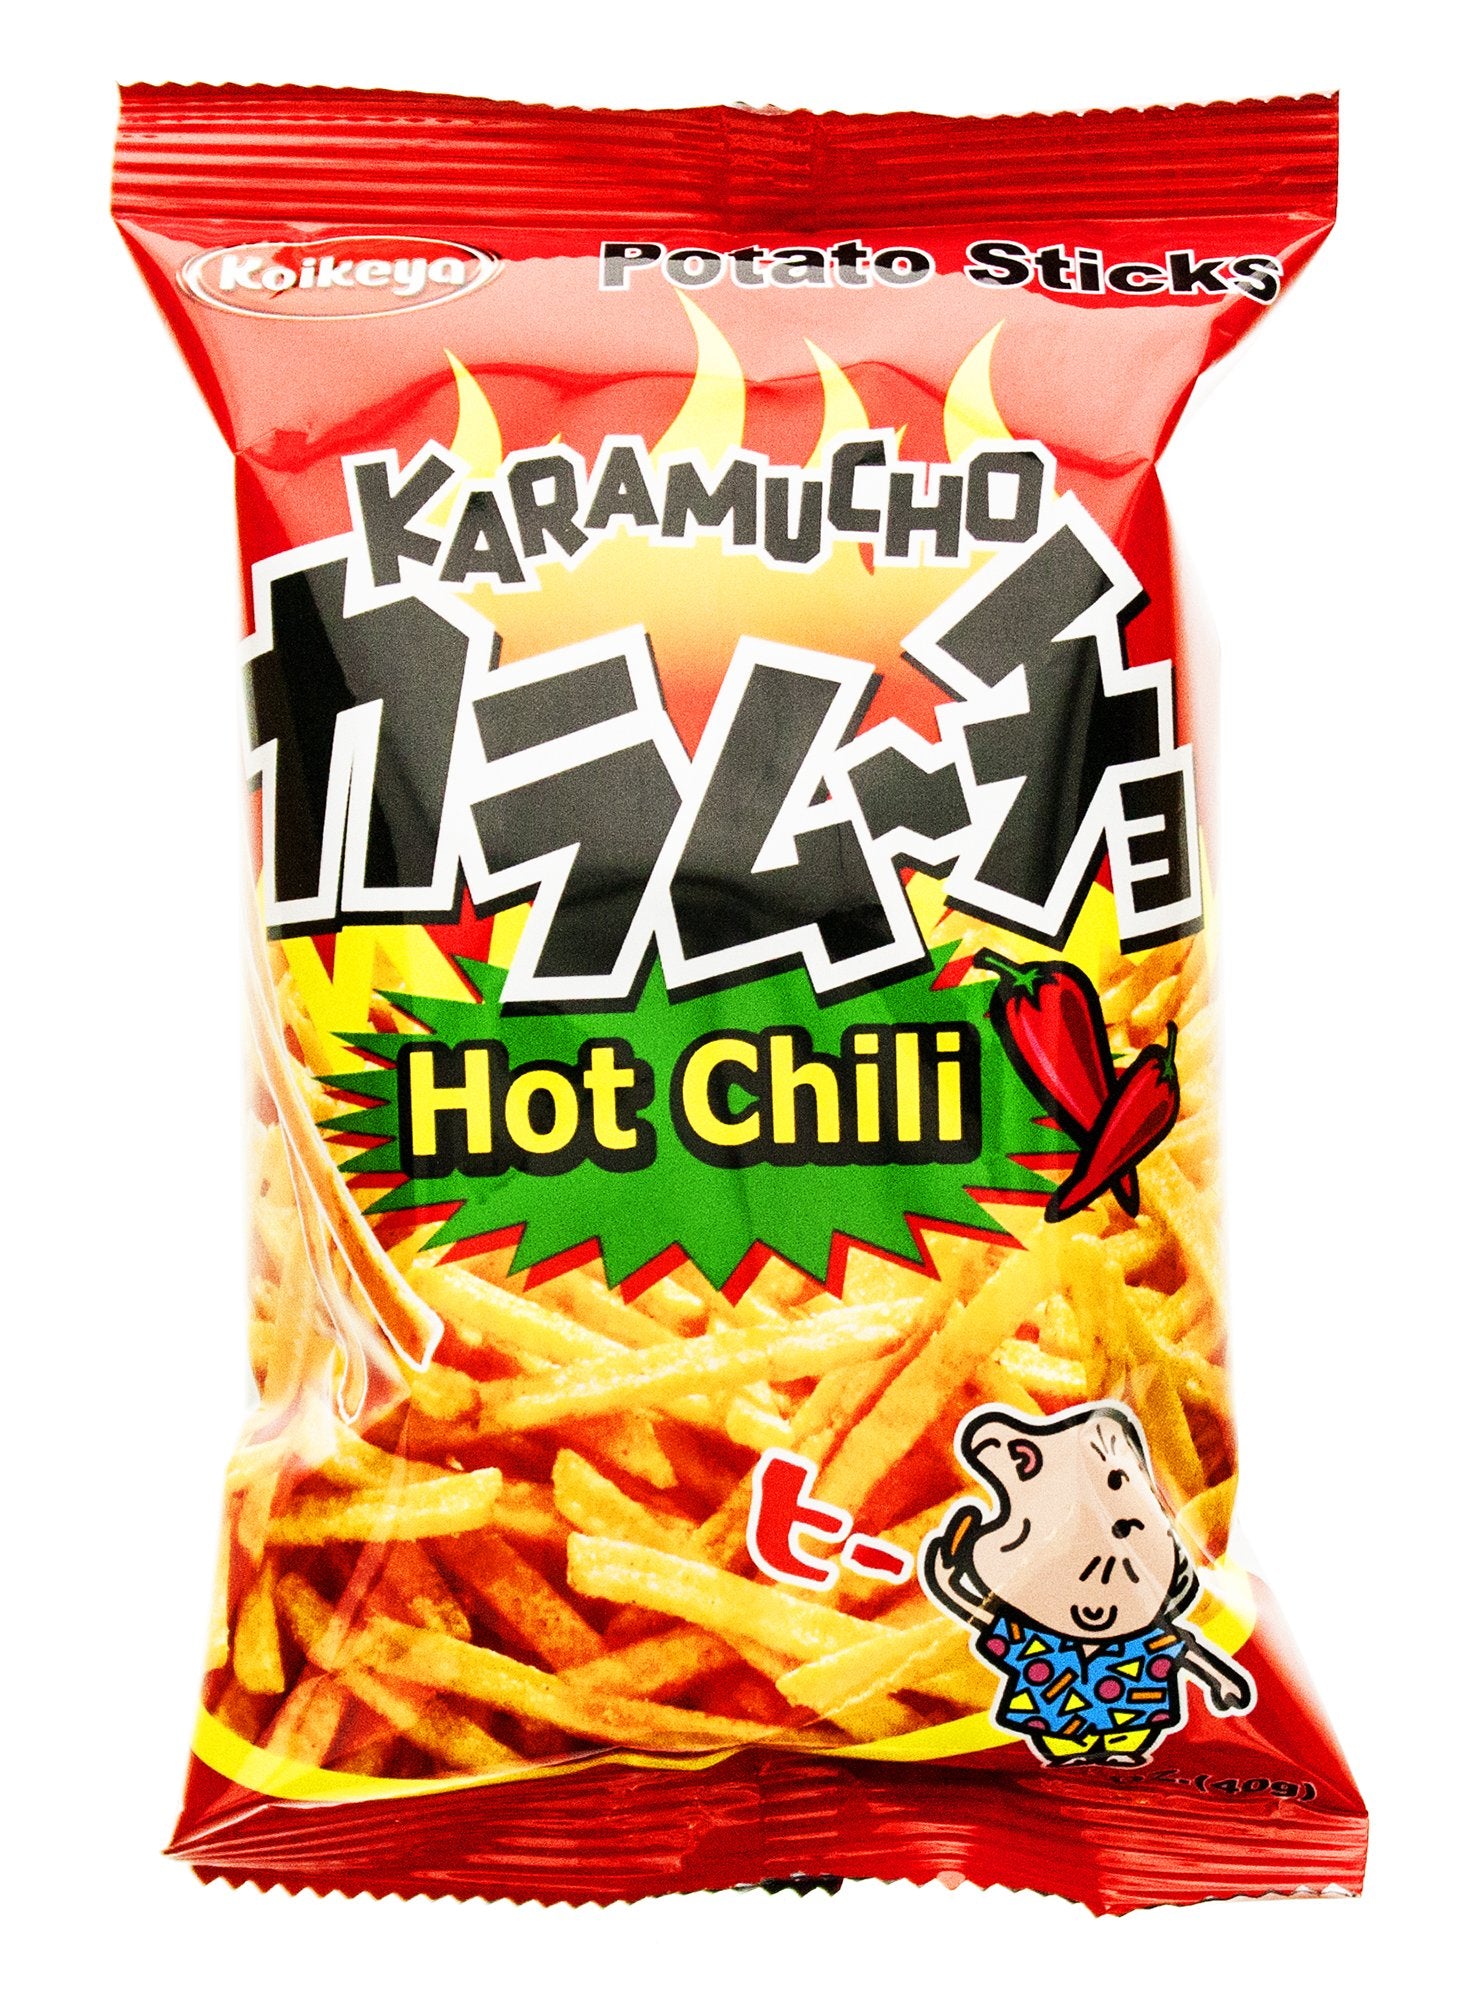 Koikeya Karamucho Potato Sticks Hot Chili, 1.4 Oz